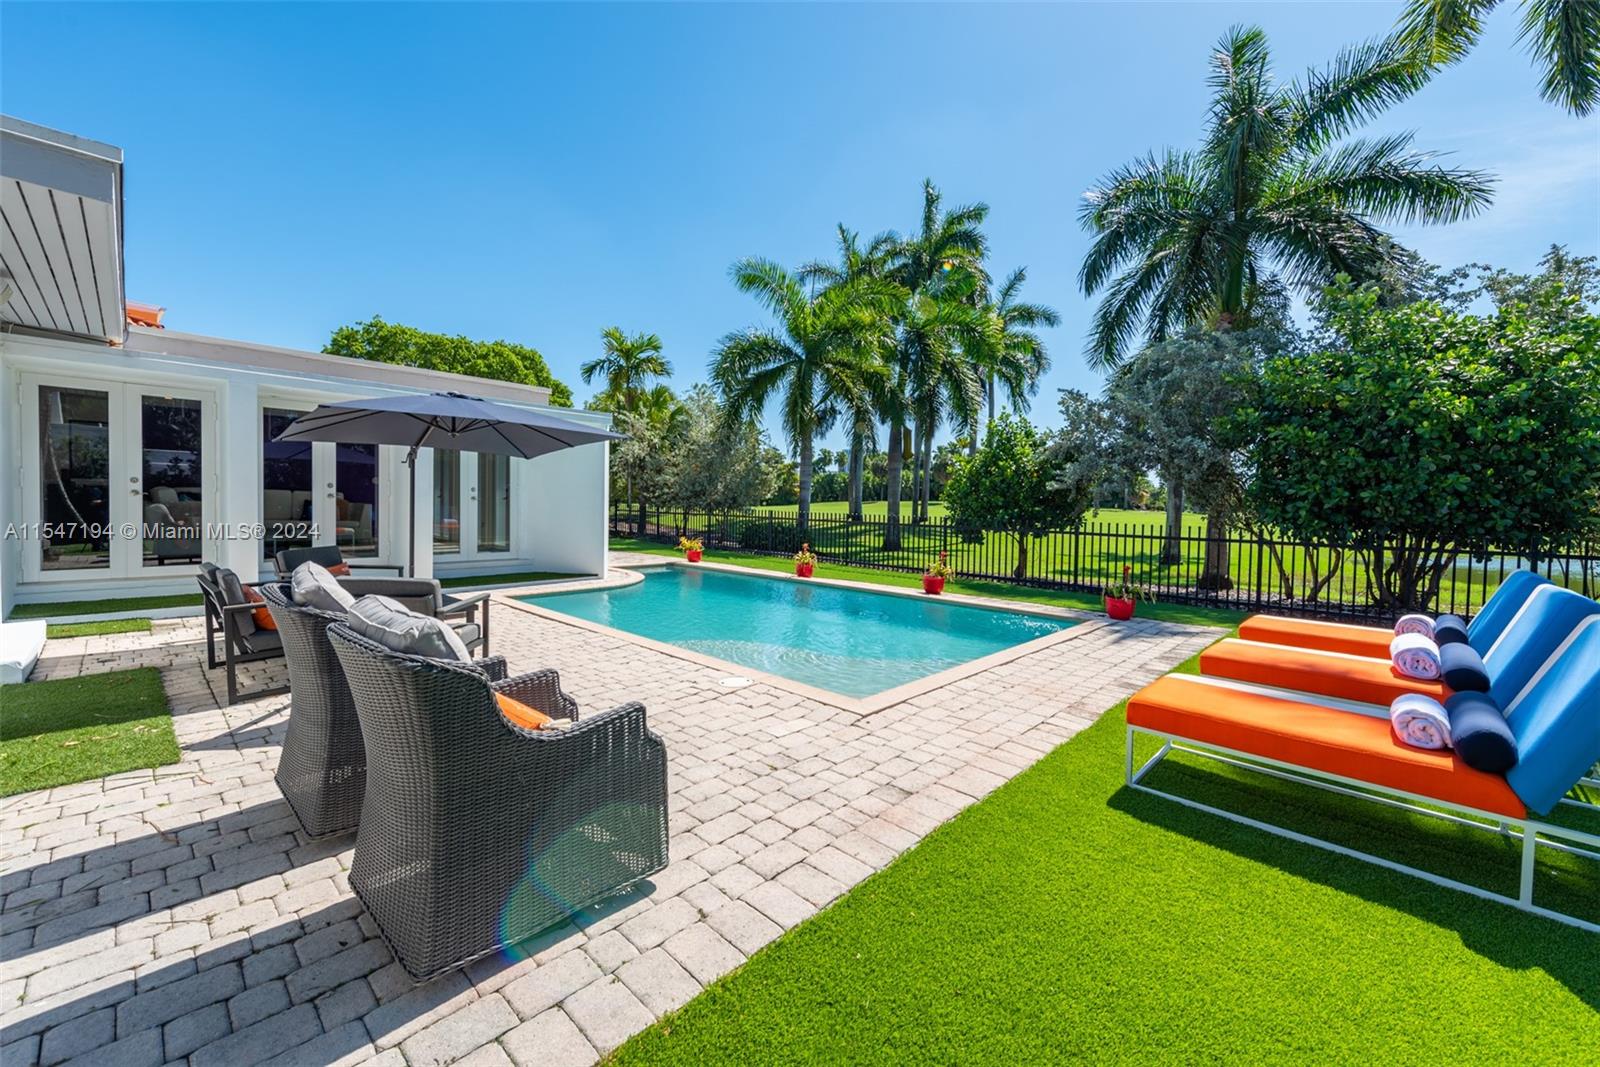 Rental Property at 5301 Alton Rd, Miami Beach, Miami-Dade County, Florida - Bedrooms: 3 
Bathrooms: 3  - $10,500 MO.